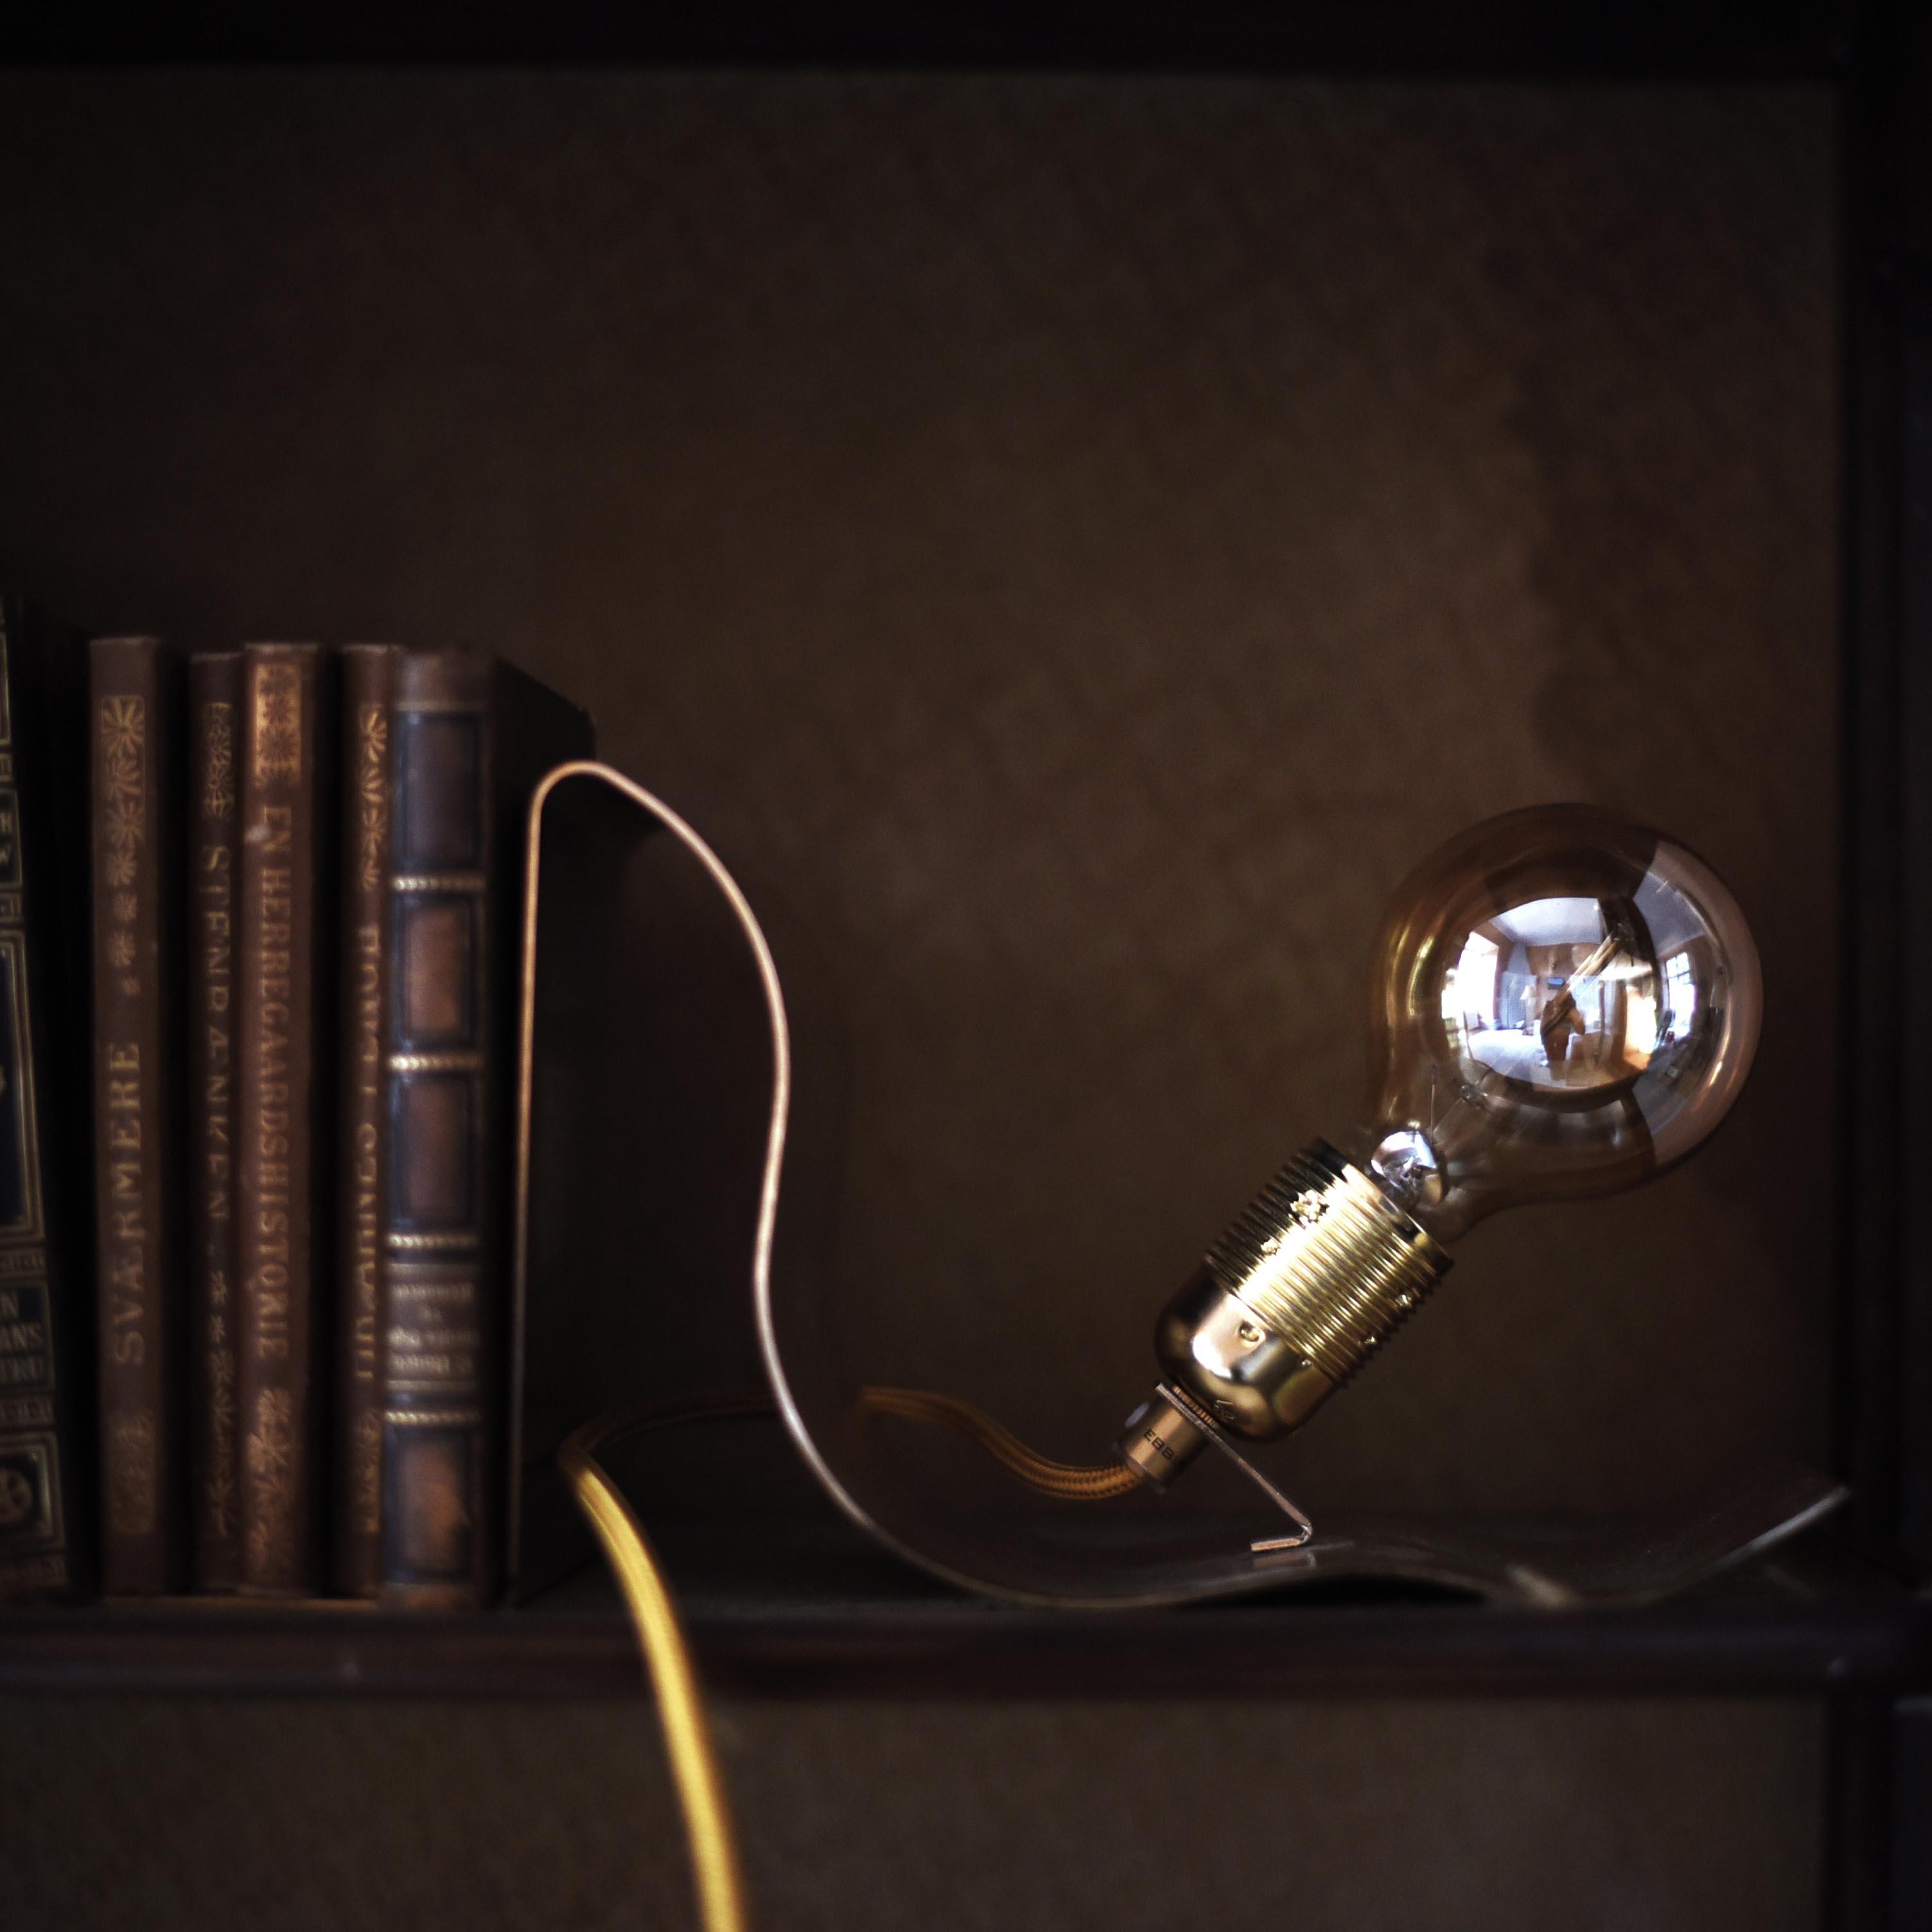 EBB&Flow Lean on Me Tischlampe / Bücherstütze #beleuchtung #lampe #badbeleuchtung ©EBB&FLOW